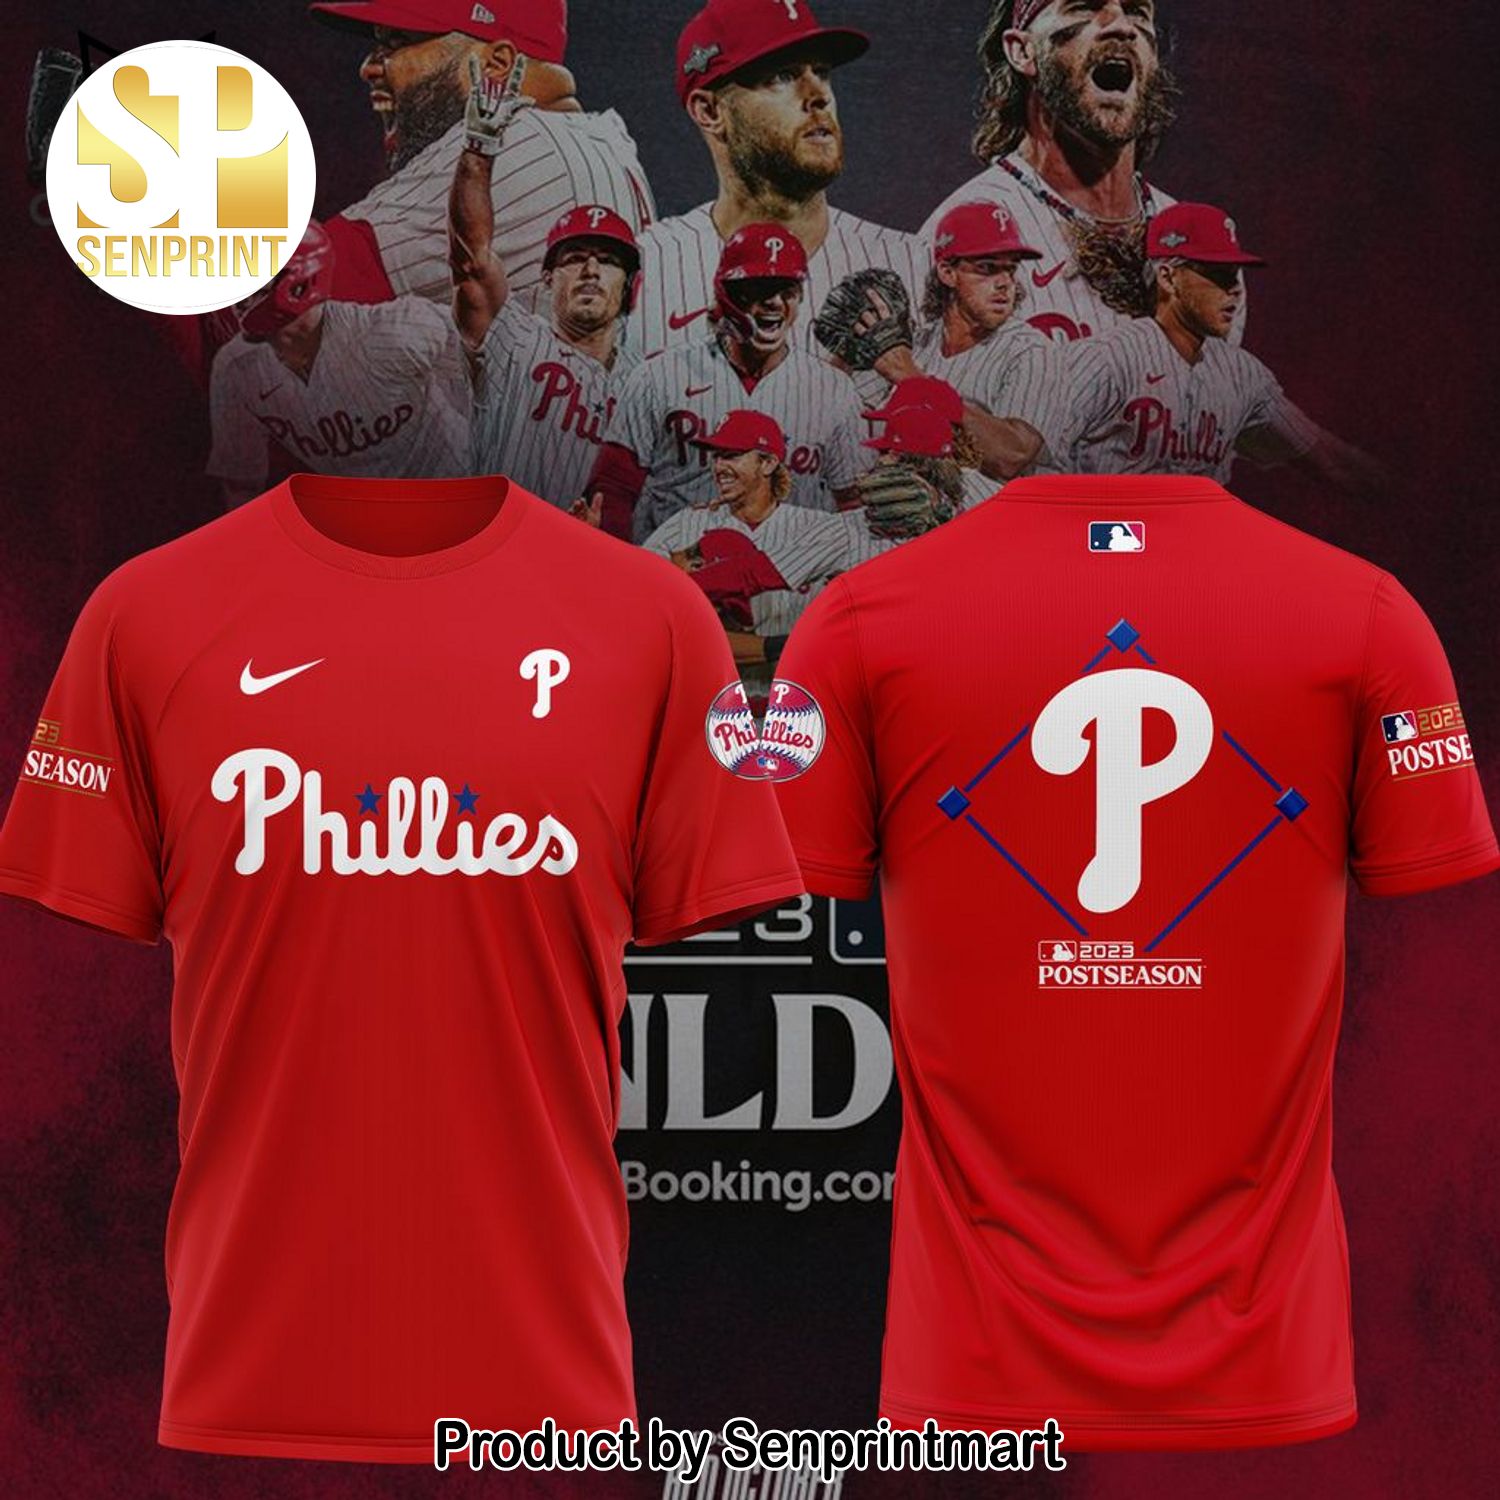 Philadelphia Phillies Postseason Red 3D Full Print Shirt